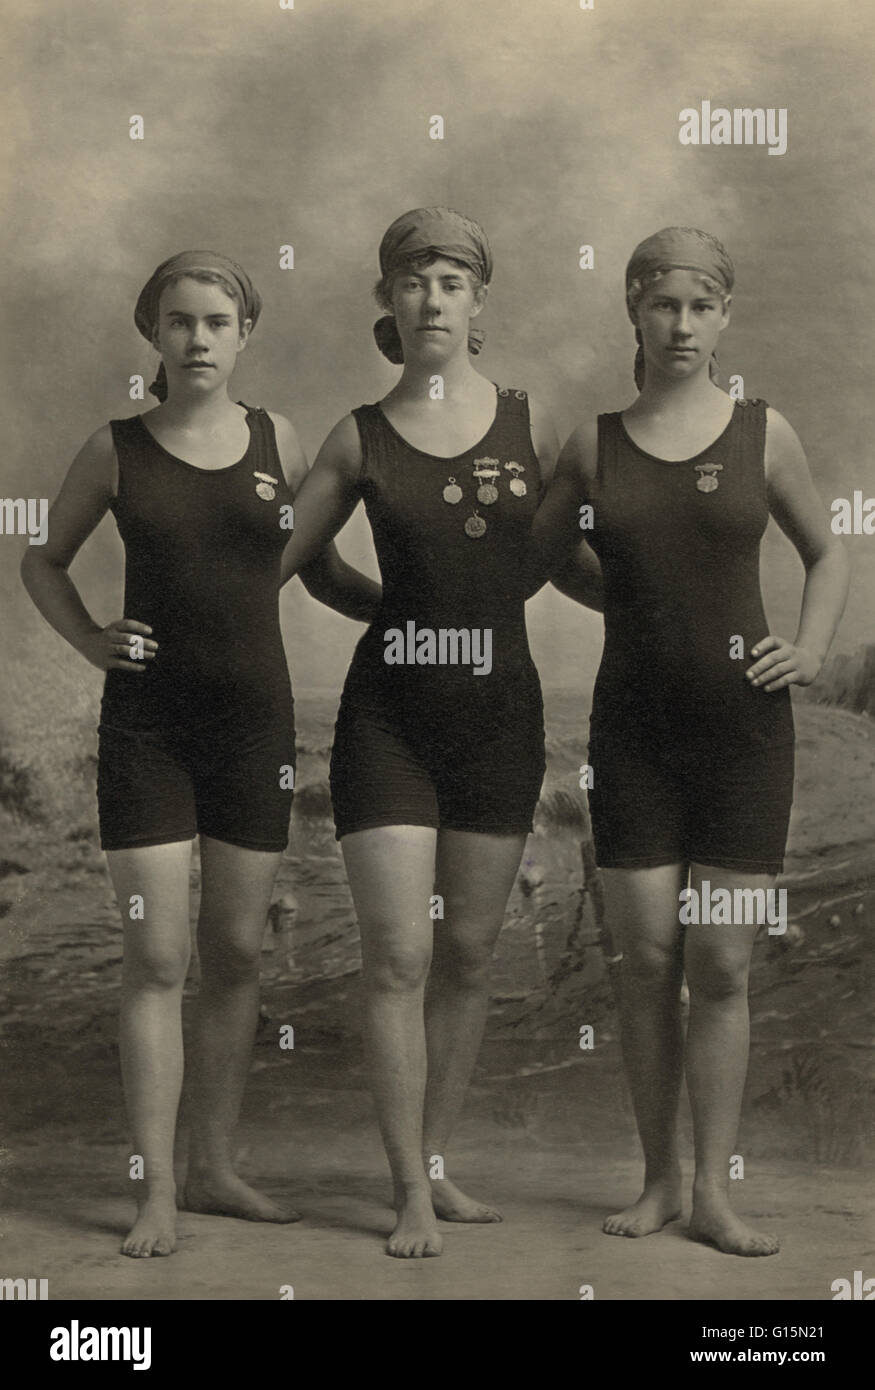 Drei junge Frauen posieren in Badeanzügen und tragen ihre schwimmen Konkurrenz Medaillen, 20er Jahre. Modegeschichte war in das 20. Jahrhundert mit einigen schockiert von den neueren Gliedmaßen alle freizügigen Figur umarmt Badeanzüge, die den Körper enthüllt deutlicher als eve Stockfoto